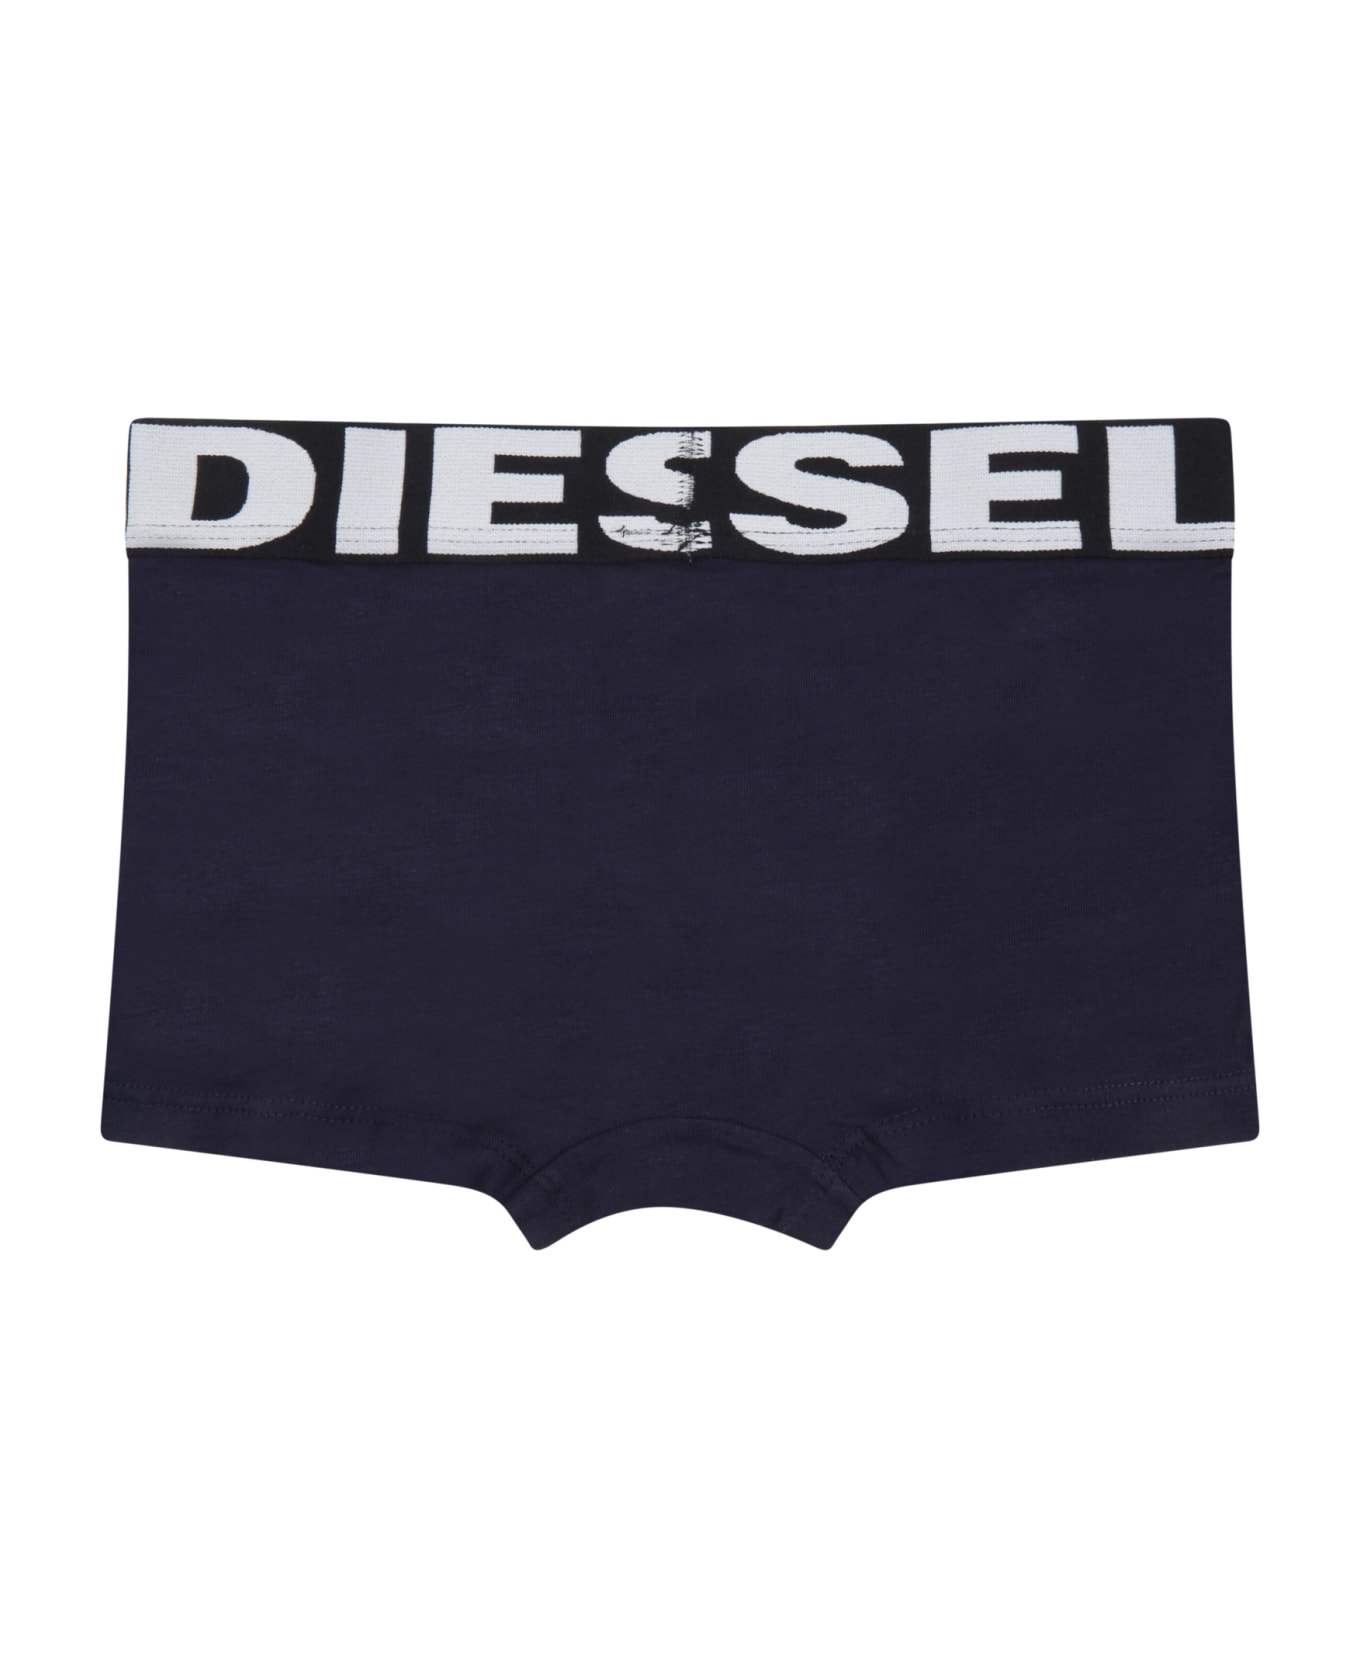 Diesel Multicolor Set For Boy With Logo - Multicolor